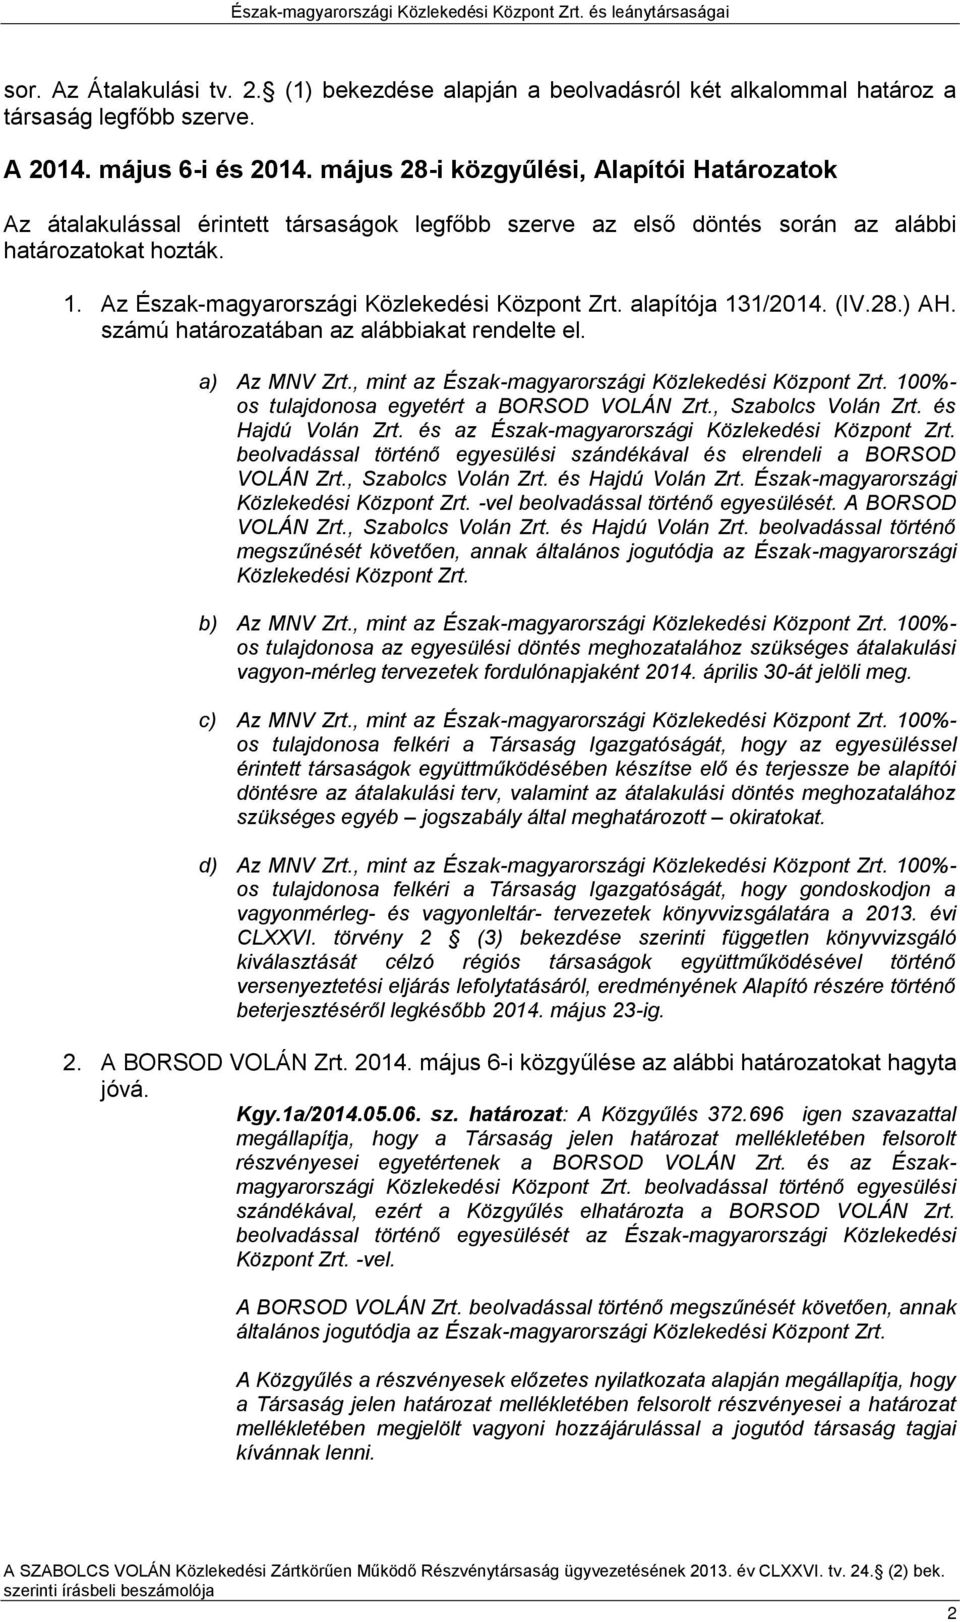 alapítója 131/2014. (IV.28.) AH. számú határozatában az alábbiakat rendelte el. a) Az MNV Zrt., mint az Észak-magyarországi Közlekedési Központ Zrt. 100%- os tulajdonosa egyetért a BORSOD VOLÁN Zrt.